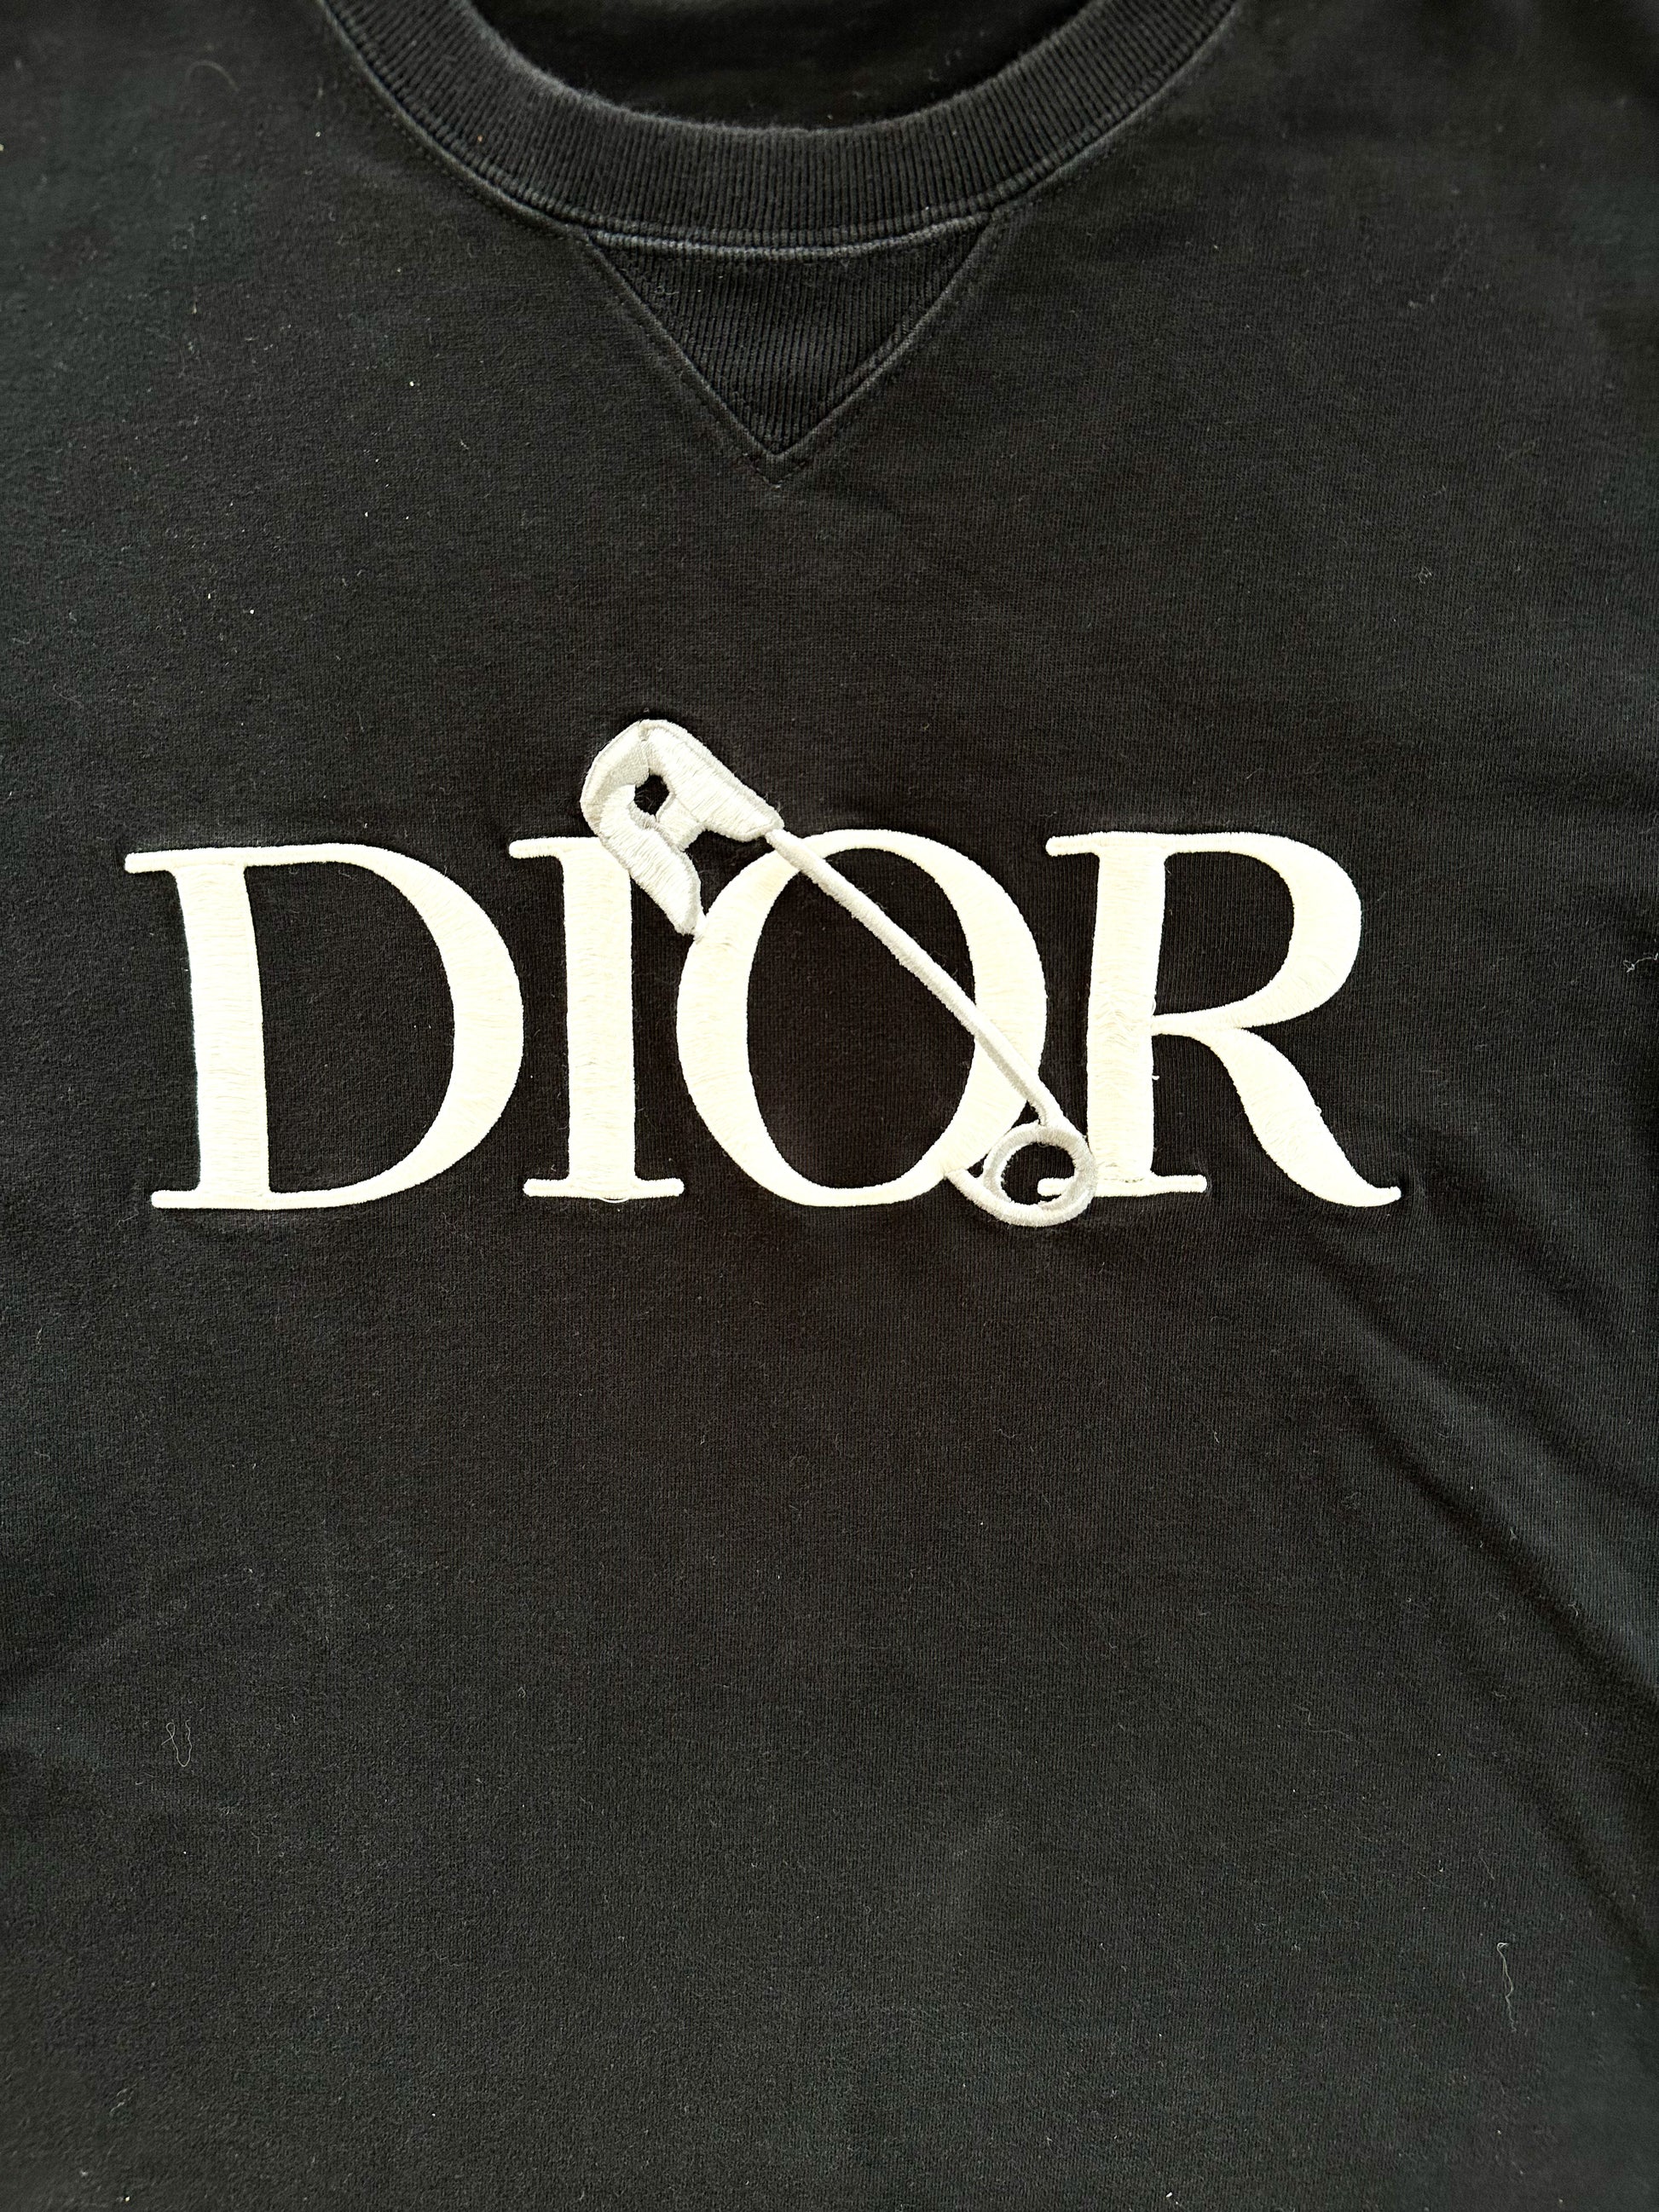 Pin on Dior